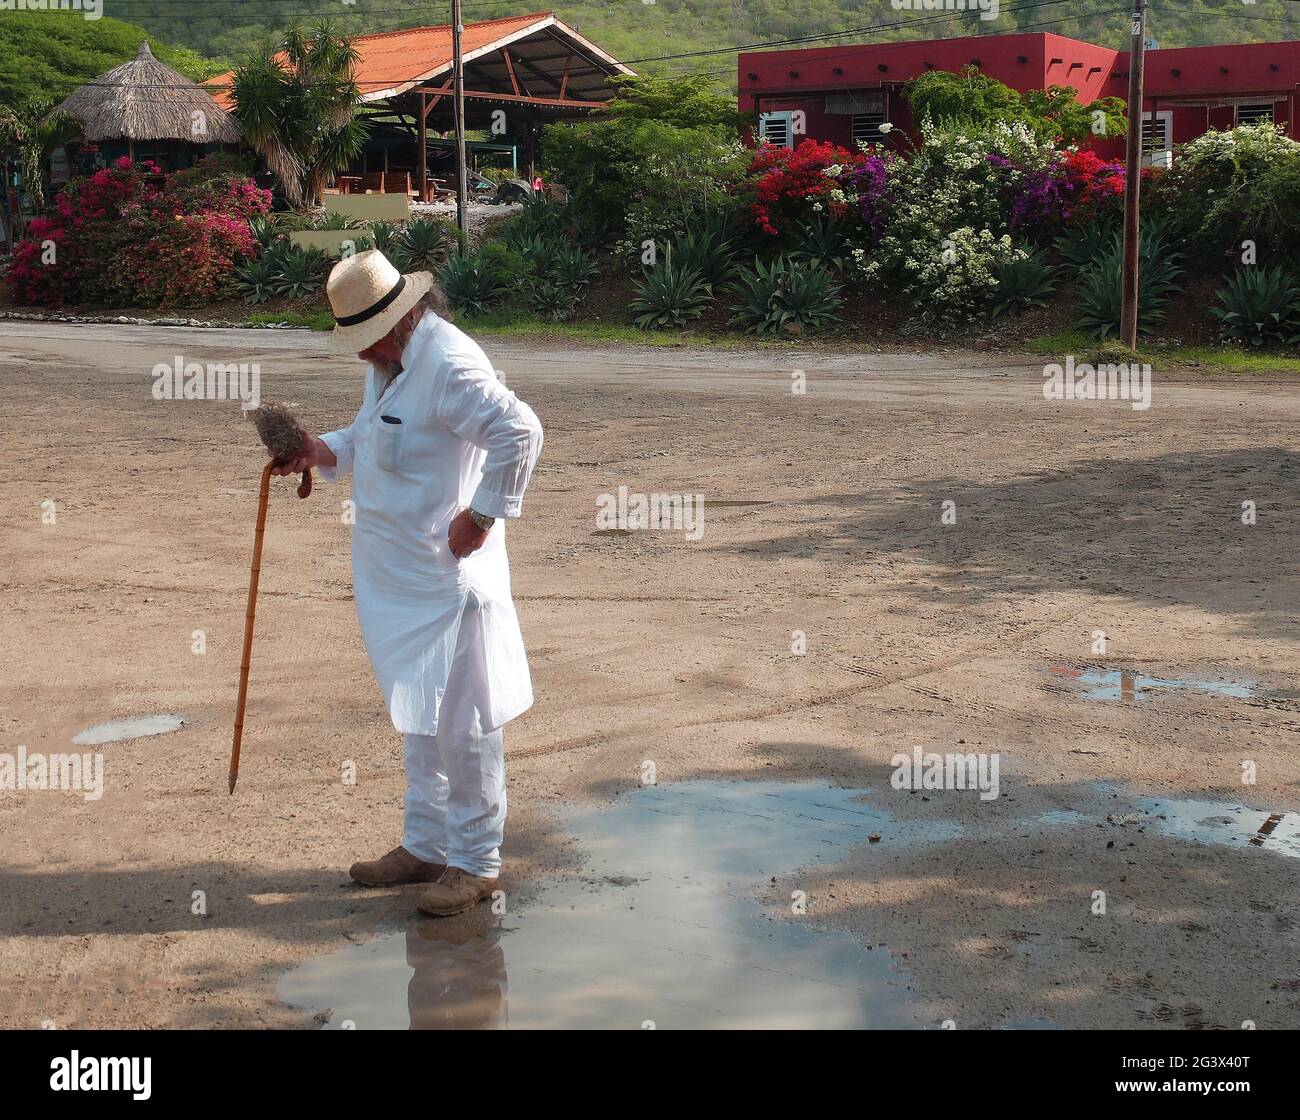 Ein Tourist in weißer Kleidung (Kurta), einem Stock und einem Strohhut, der vor einer Reihe von Häusern steht. Er prüft seine Tasche. Karibischer Urlaub. Stockfoto